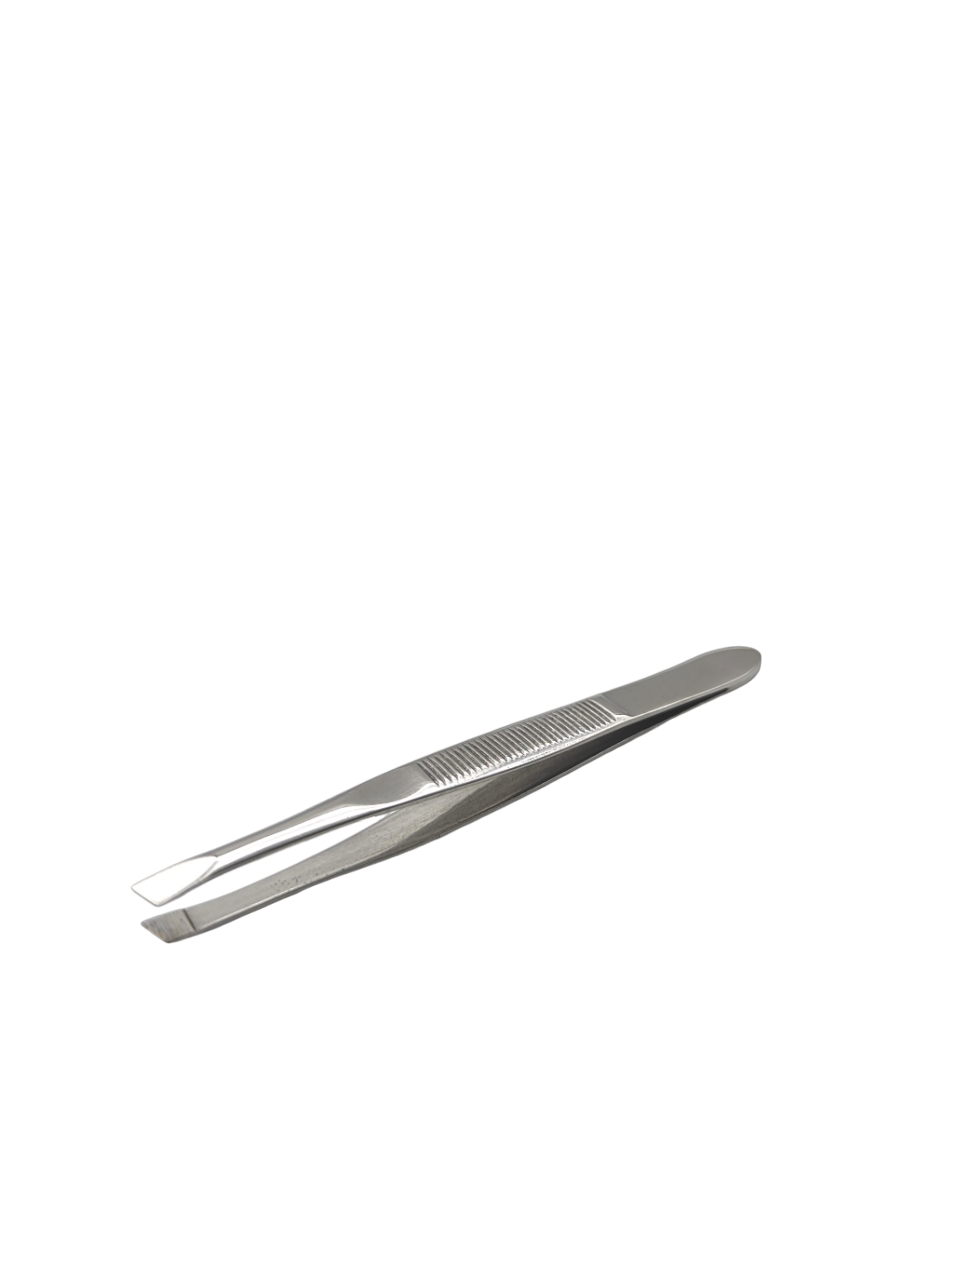 Пинцет для бровей BSPro-1 серебристый lucas пинцет профессиональный для бровей с ручной заточкой со скошенными кончиками